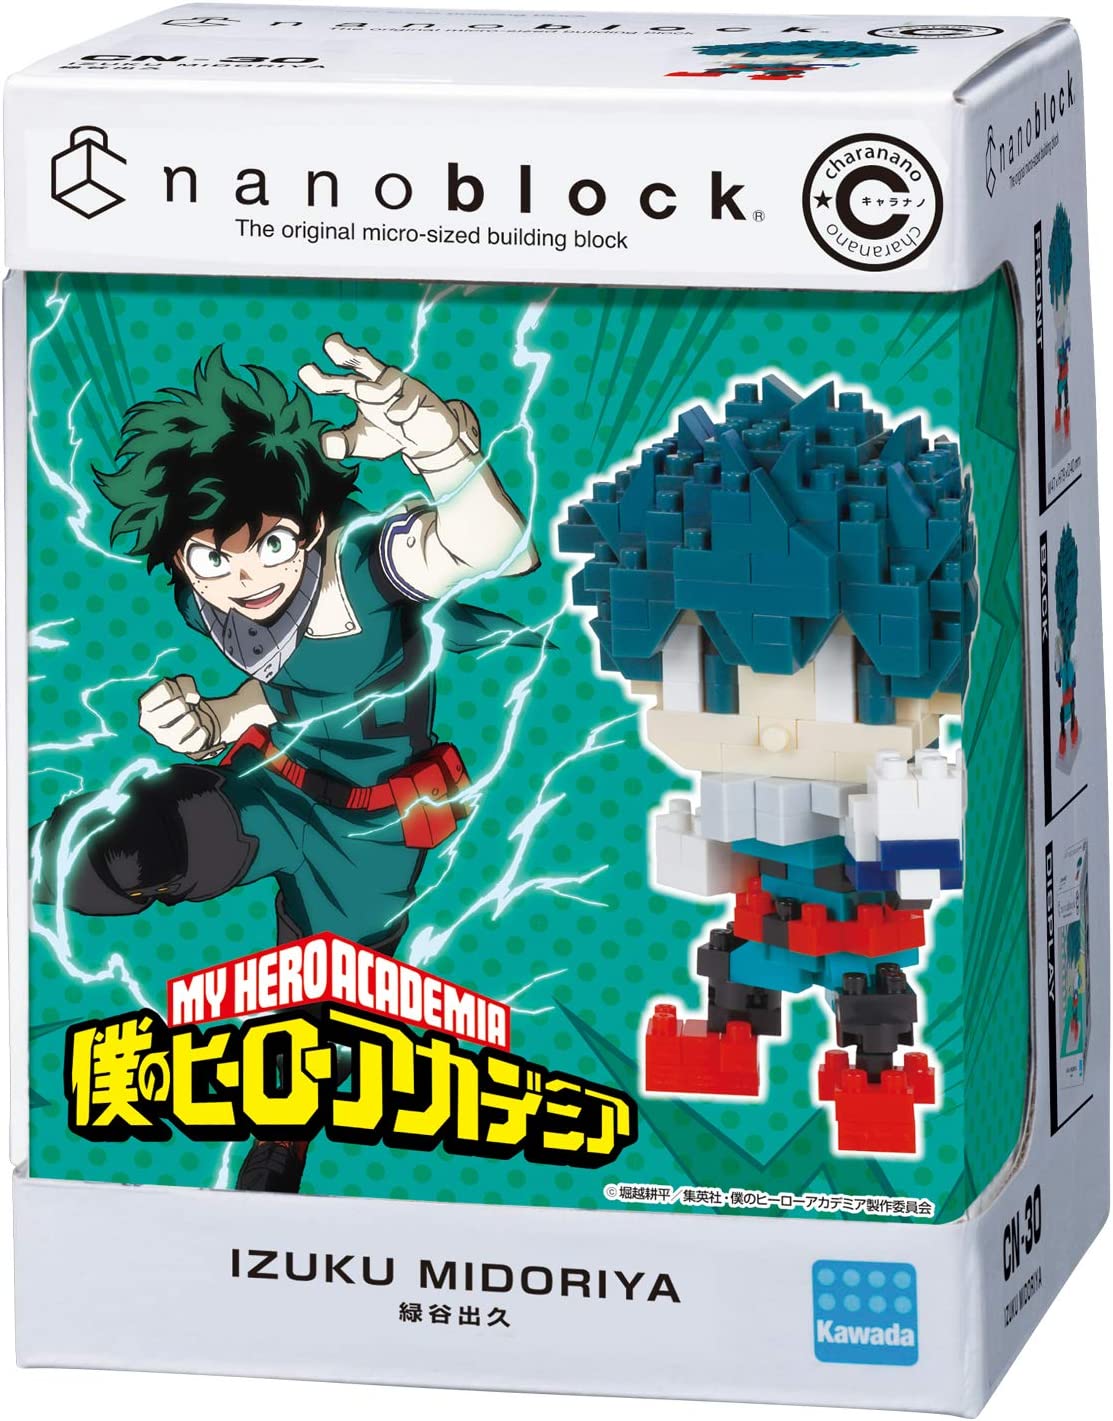 My Hero Academia Nanoblock Set - Izuku Midoriya